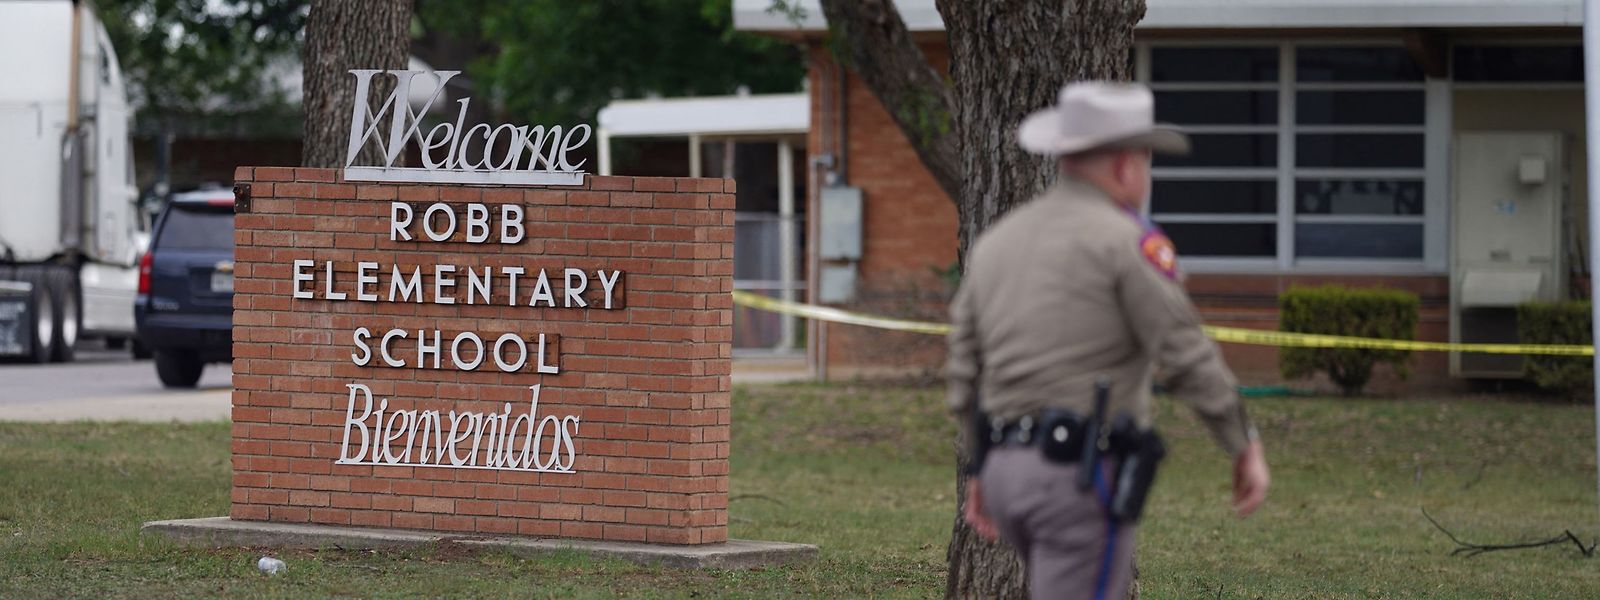 O mais recente trágico tiroteio numa escola dos EUA aconteceu em maio numa escola primária na cidade na cidade de Uvalde, no estado do Texas.